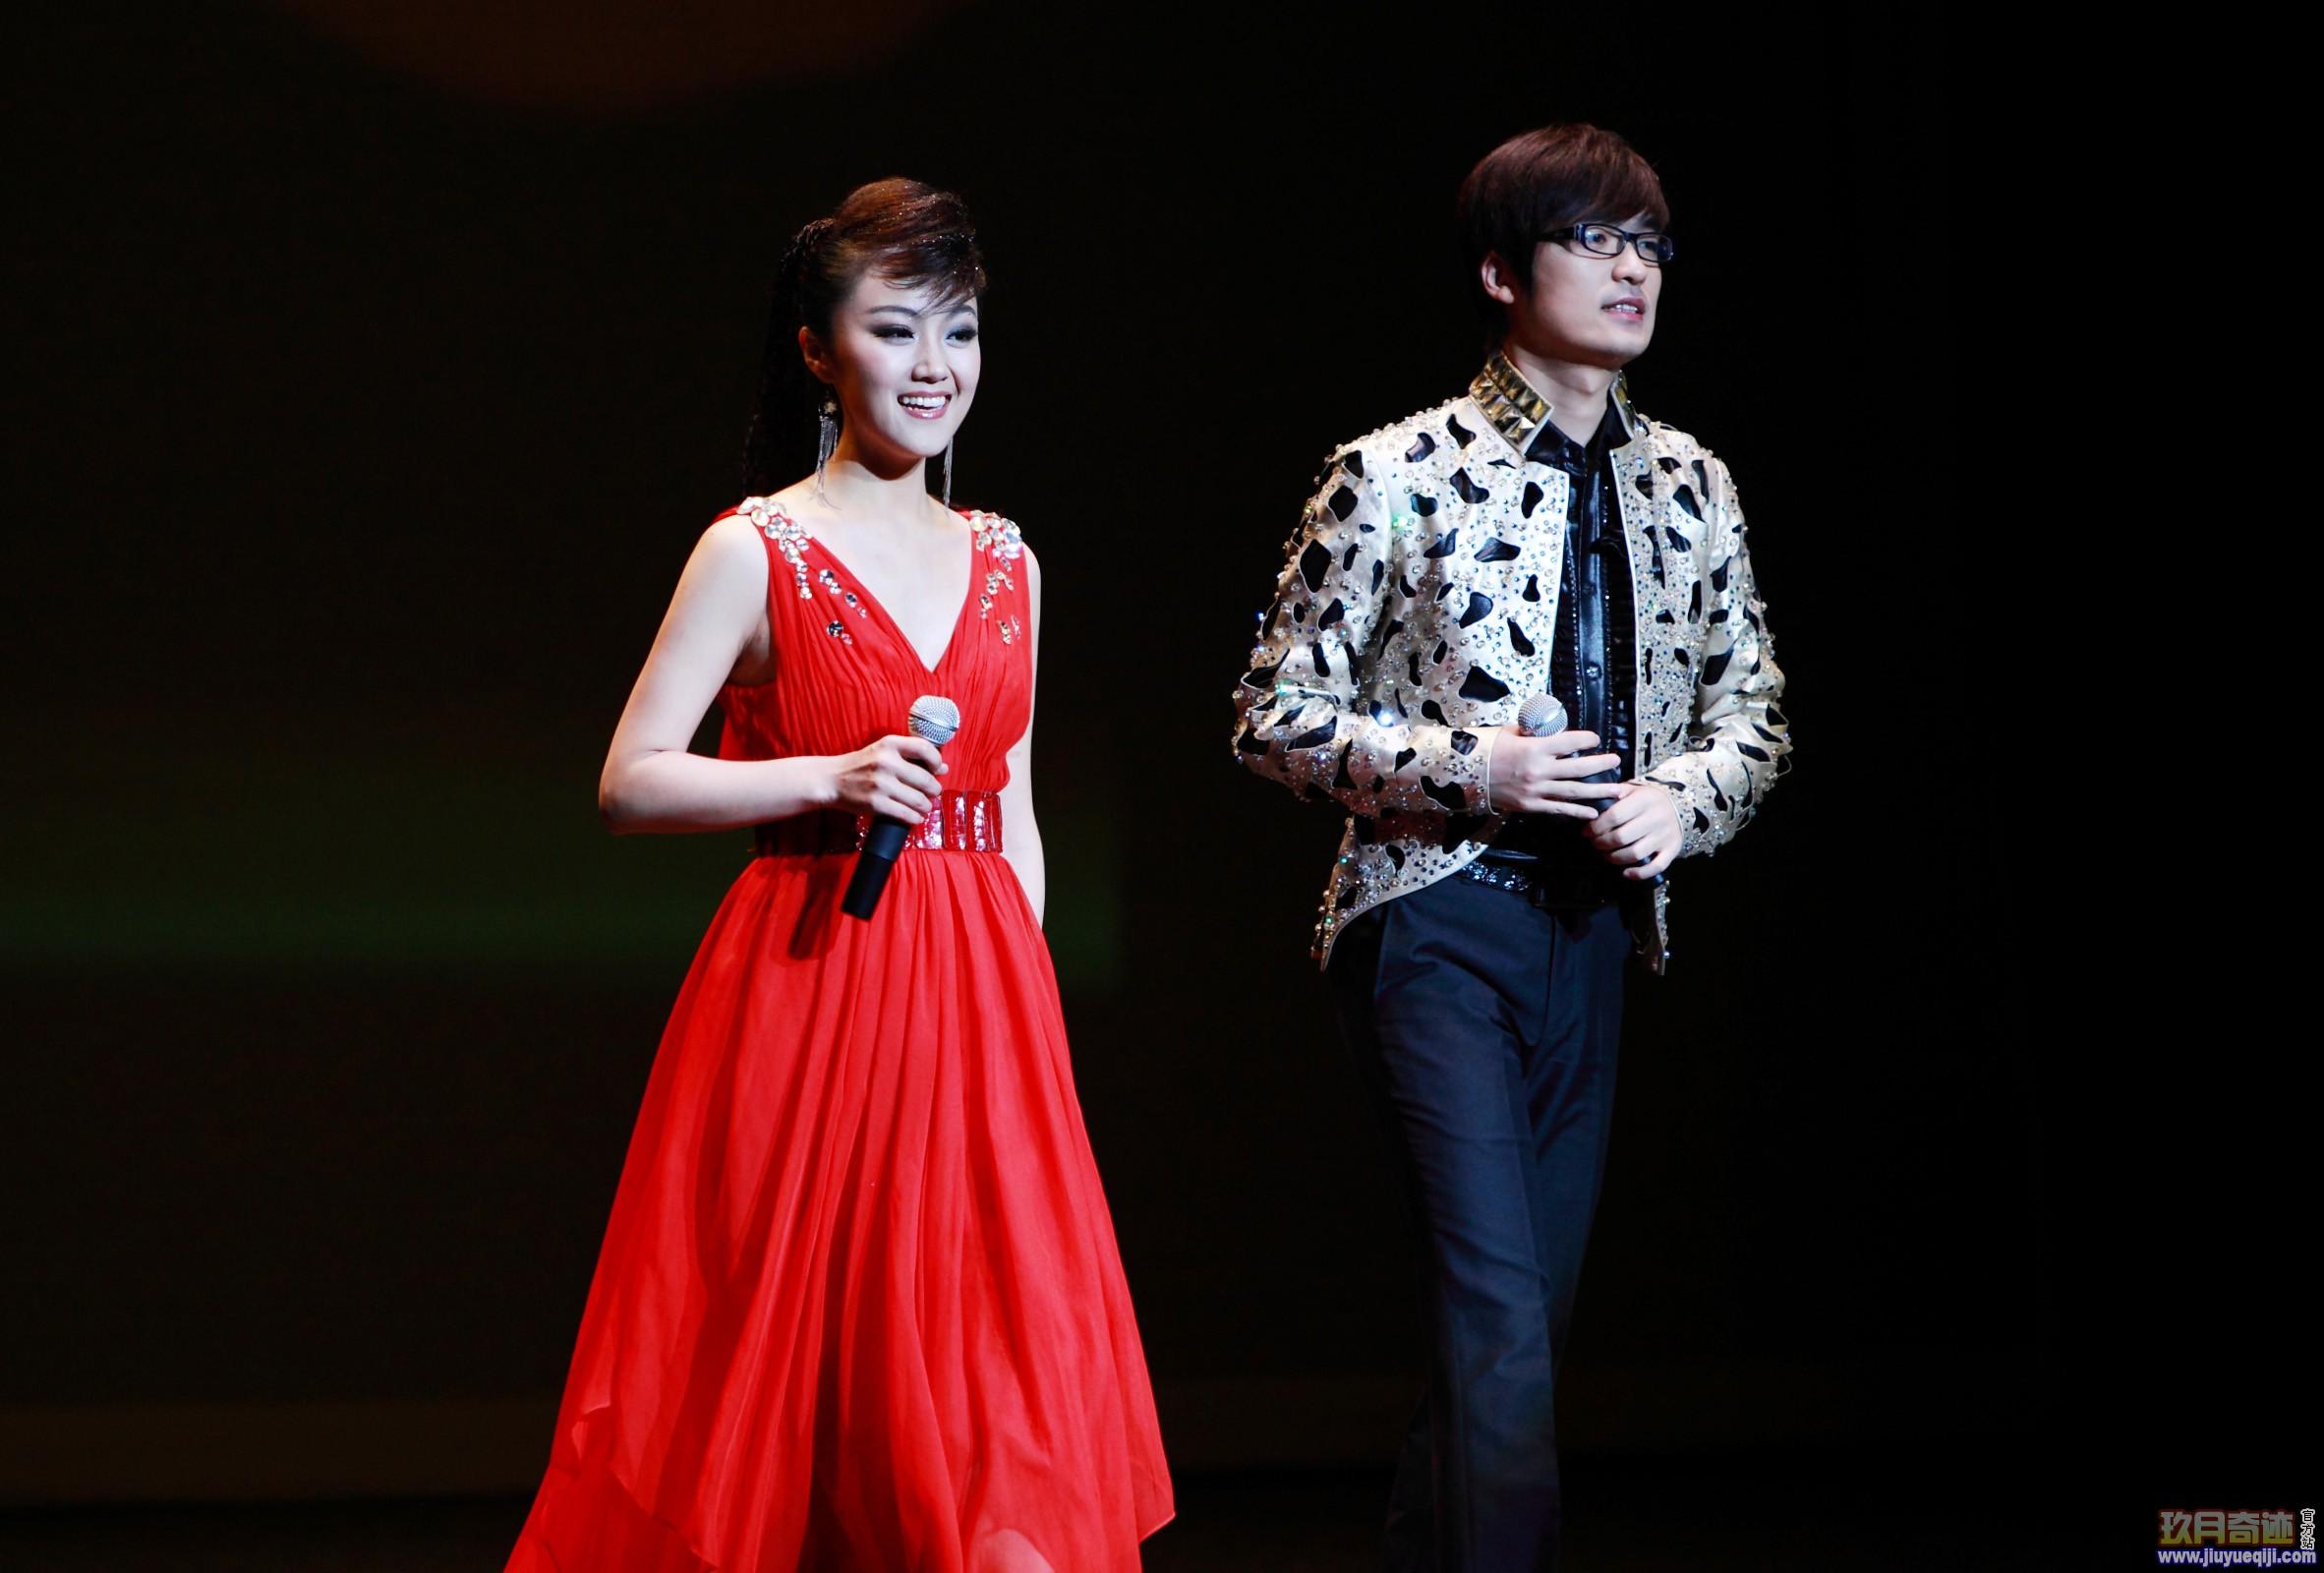 《星光大道》年度总冠军后,王小玮和王小海迅速成为了家喻户晓的歌手